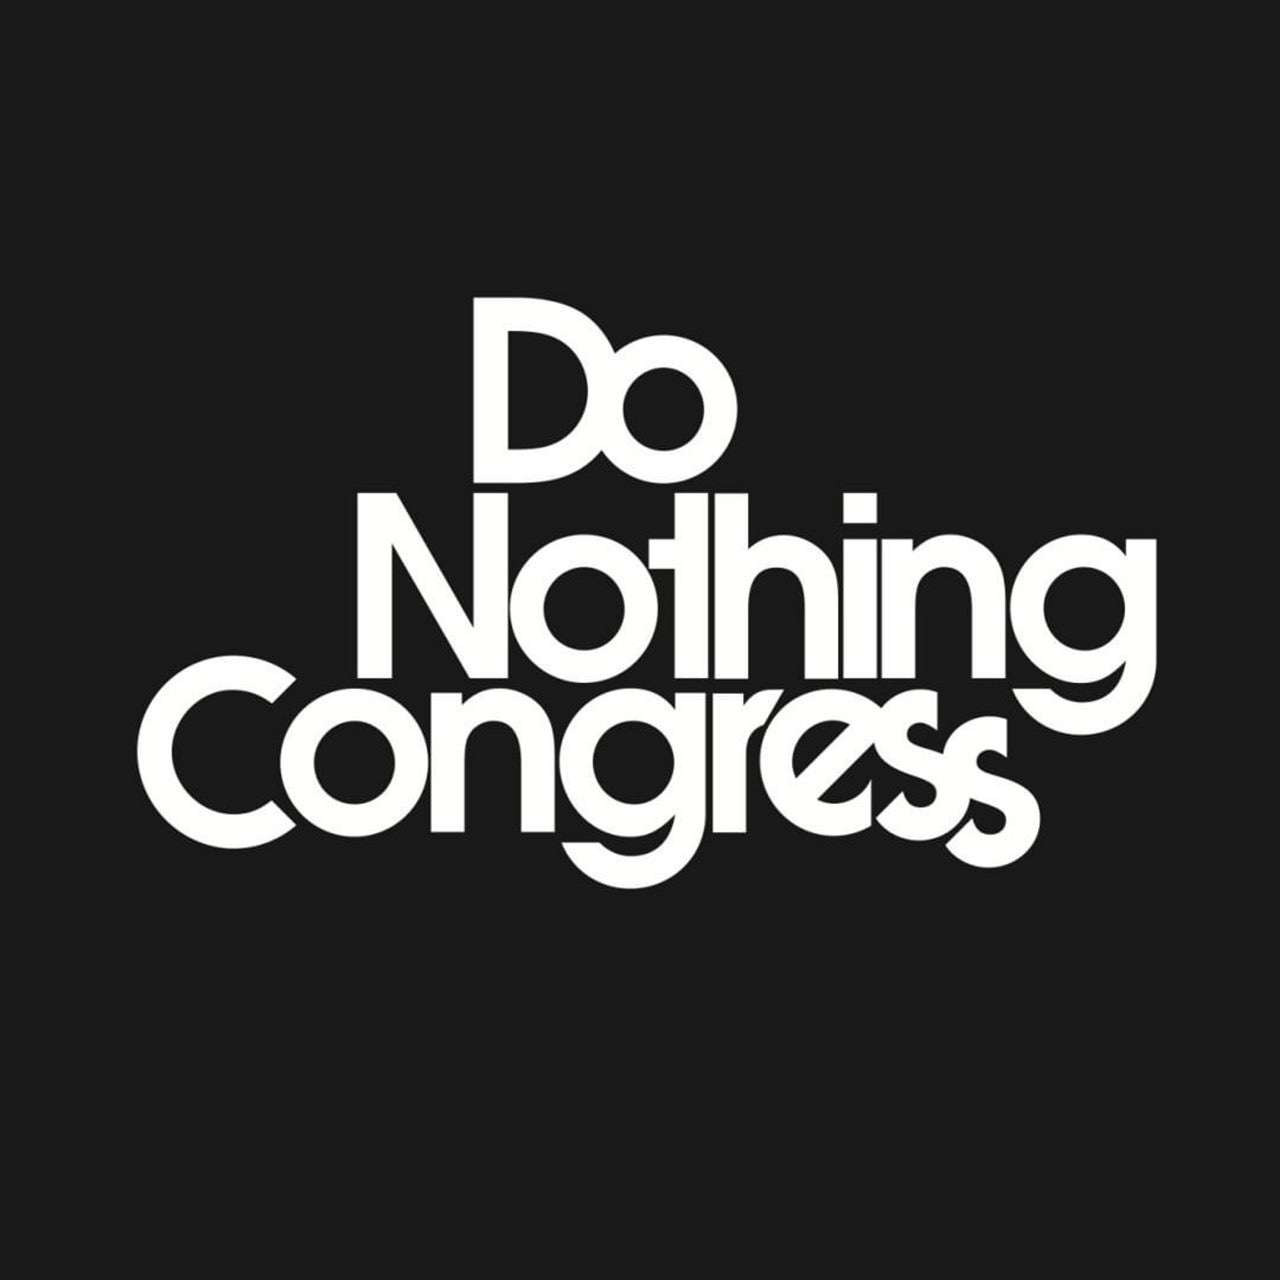 Do Nothing Congress " 14.JUL.1789 " T-SHIRTS / Do Nothing Congress